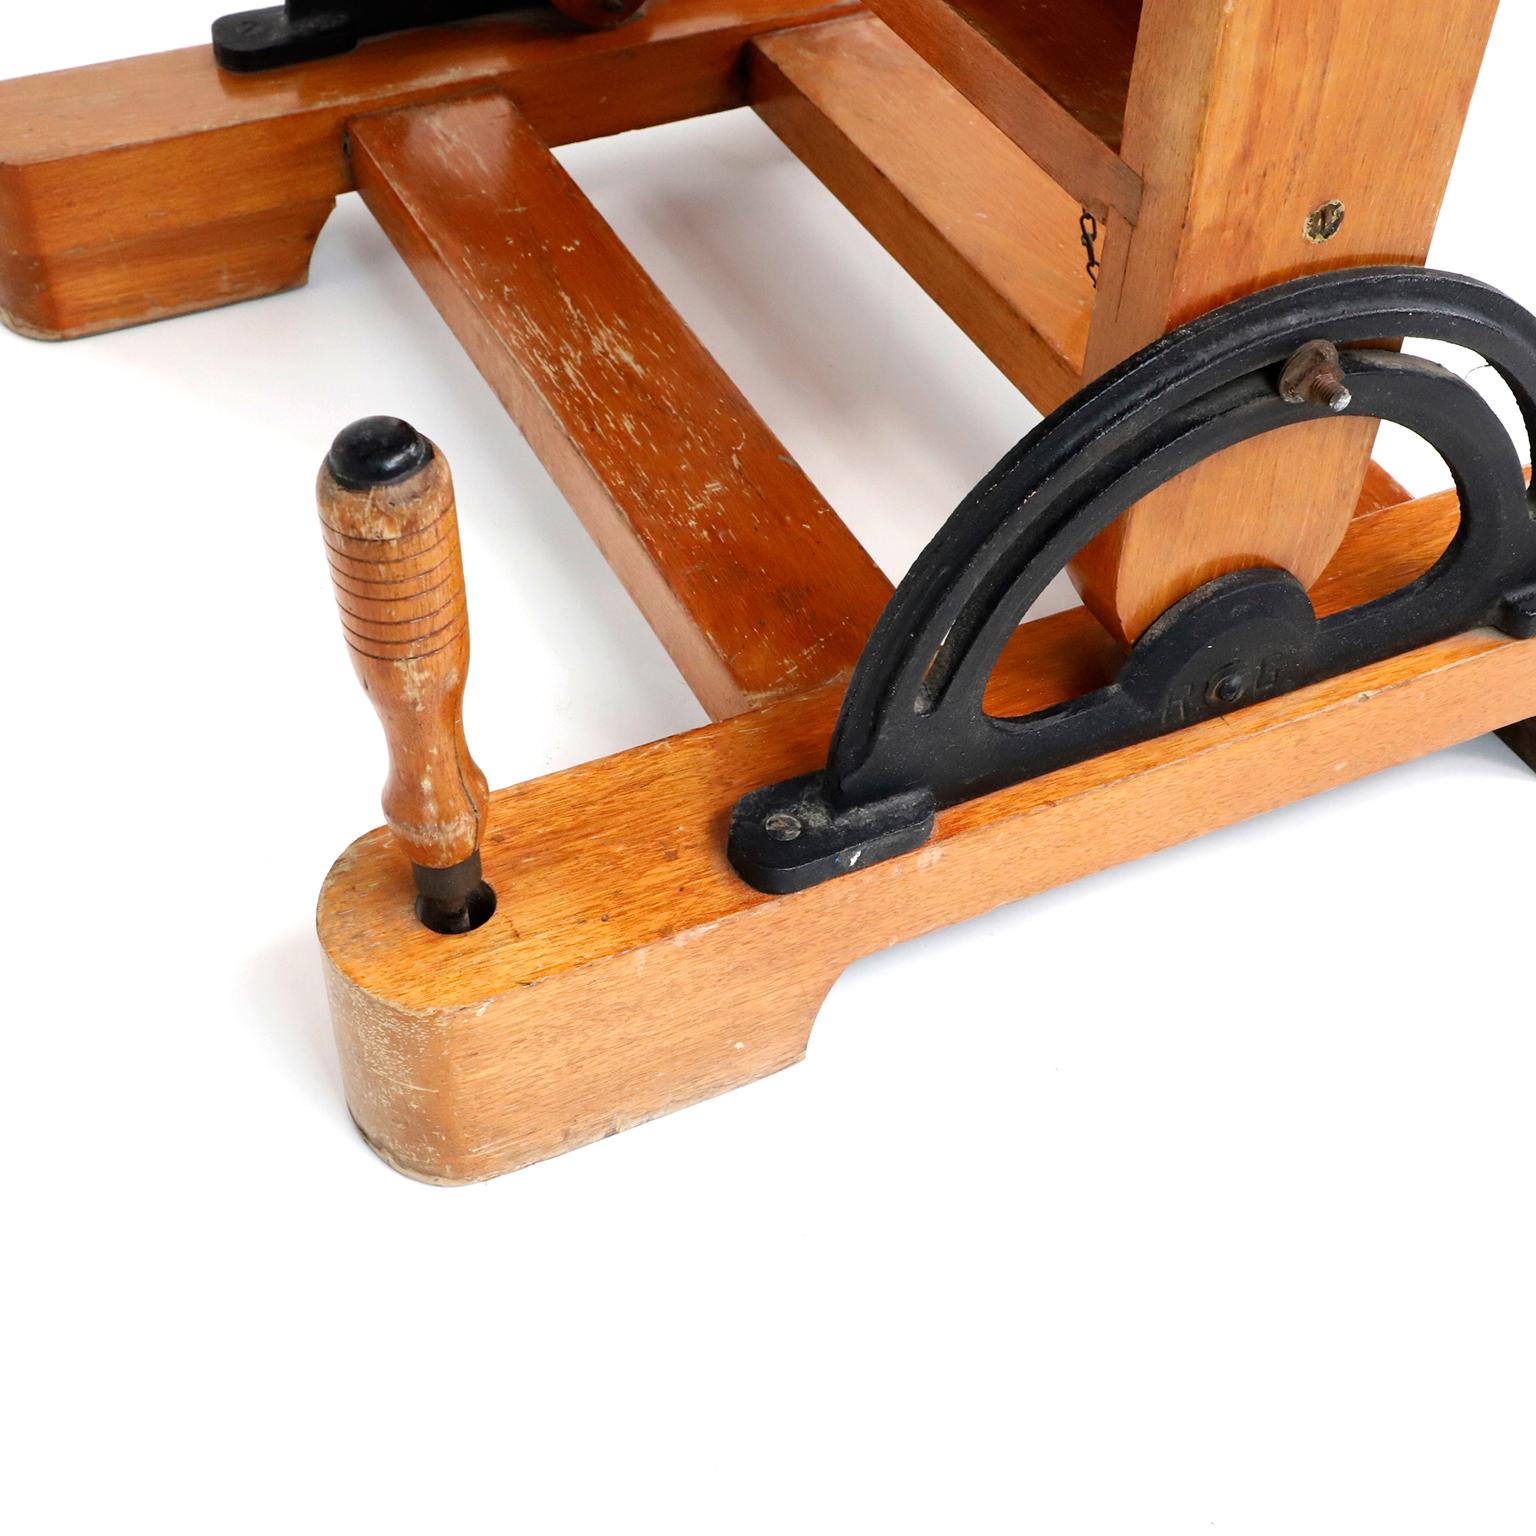 Circa 1950, nous vous proposons ce rare chevalet et table d'artiste ajustable en bois mexicain, fait en acajou. Le bois a une belle patine ancienne, avec des vestiges de créations artistiques du passé. Ce chevalet a le même design que ceux qui se